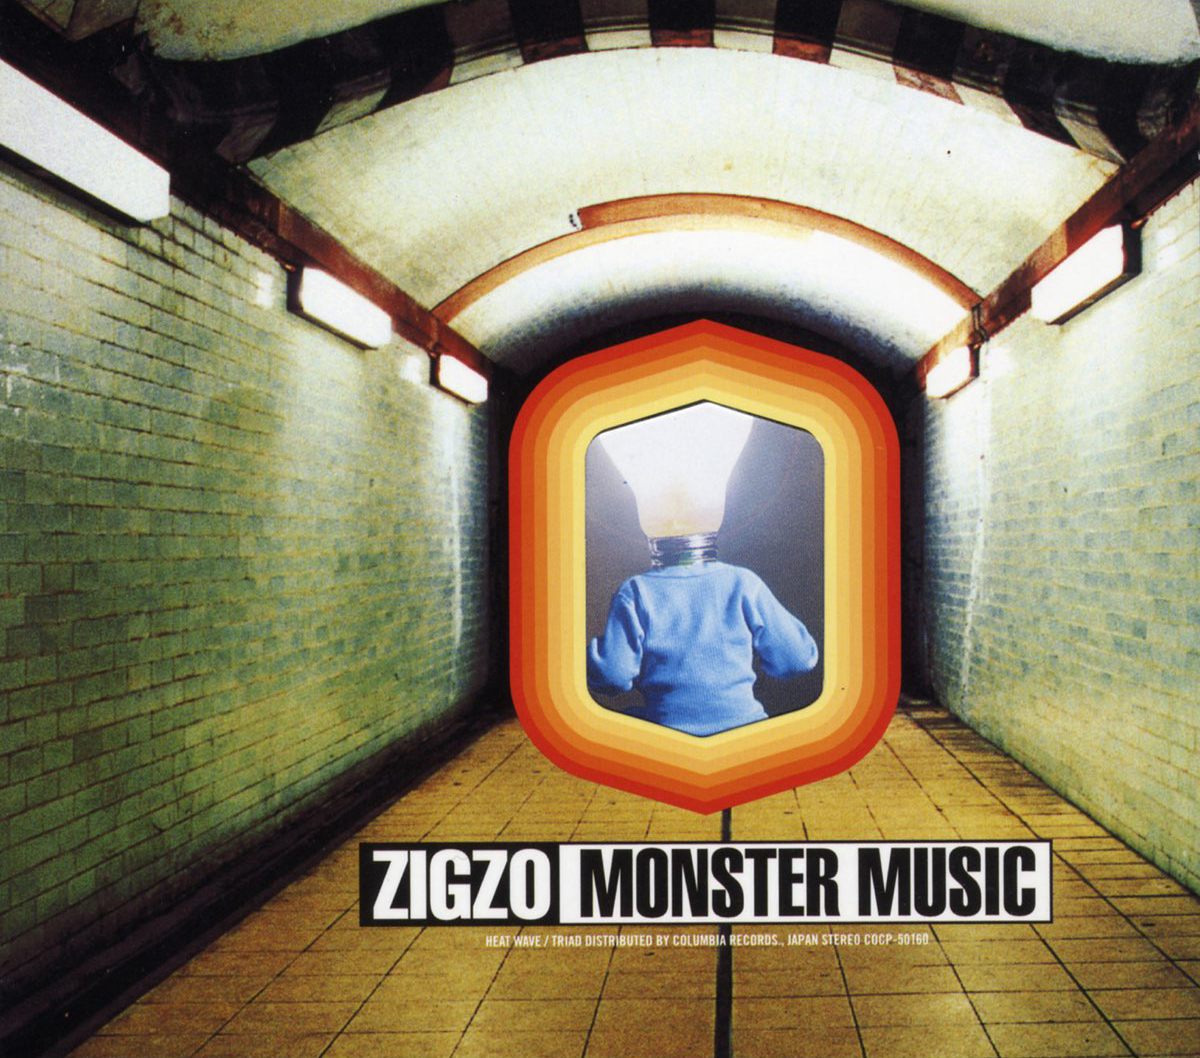 MONSTER MUSIC / ZIGZO